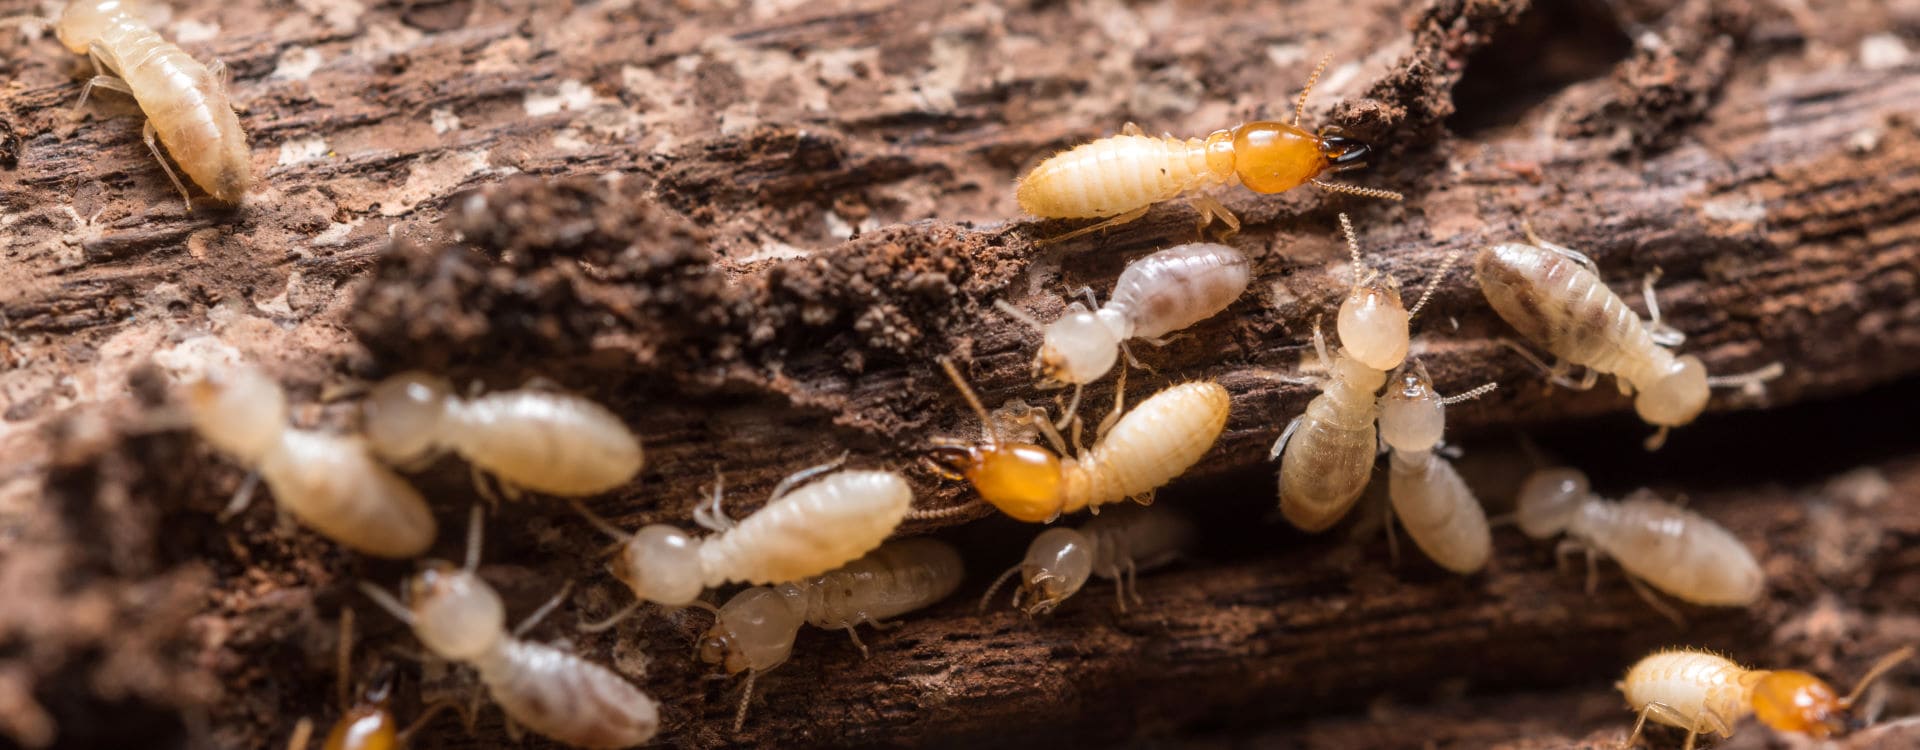 Termites Destroy Wood Inside Homes